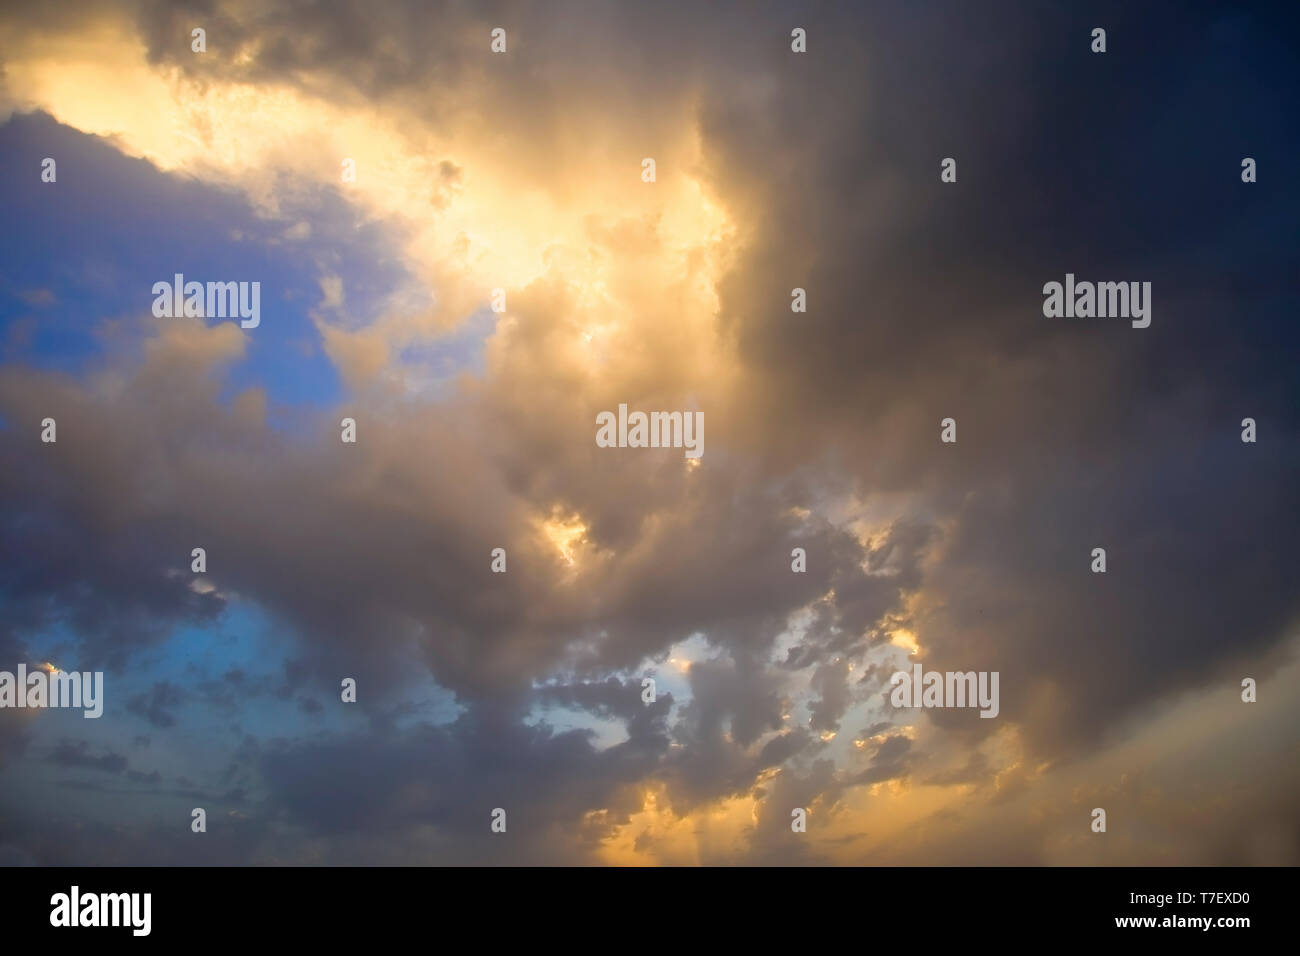 Formazioni di nubi con il sole alle spalle. Immagine di stock Foto Stock